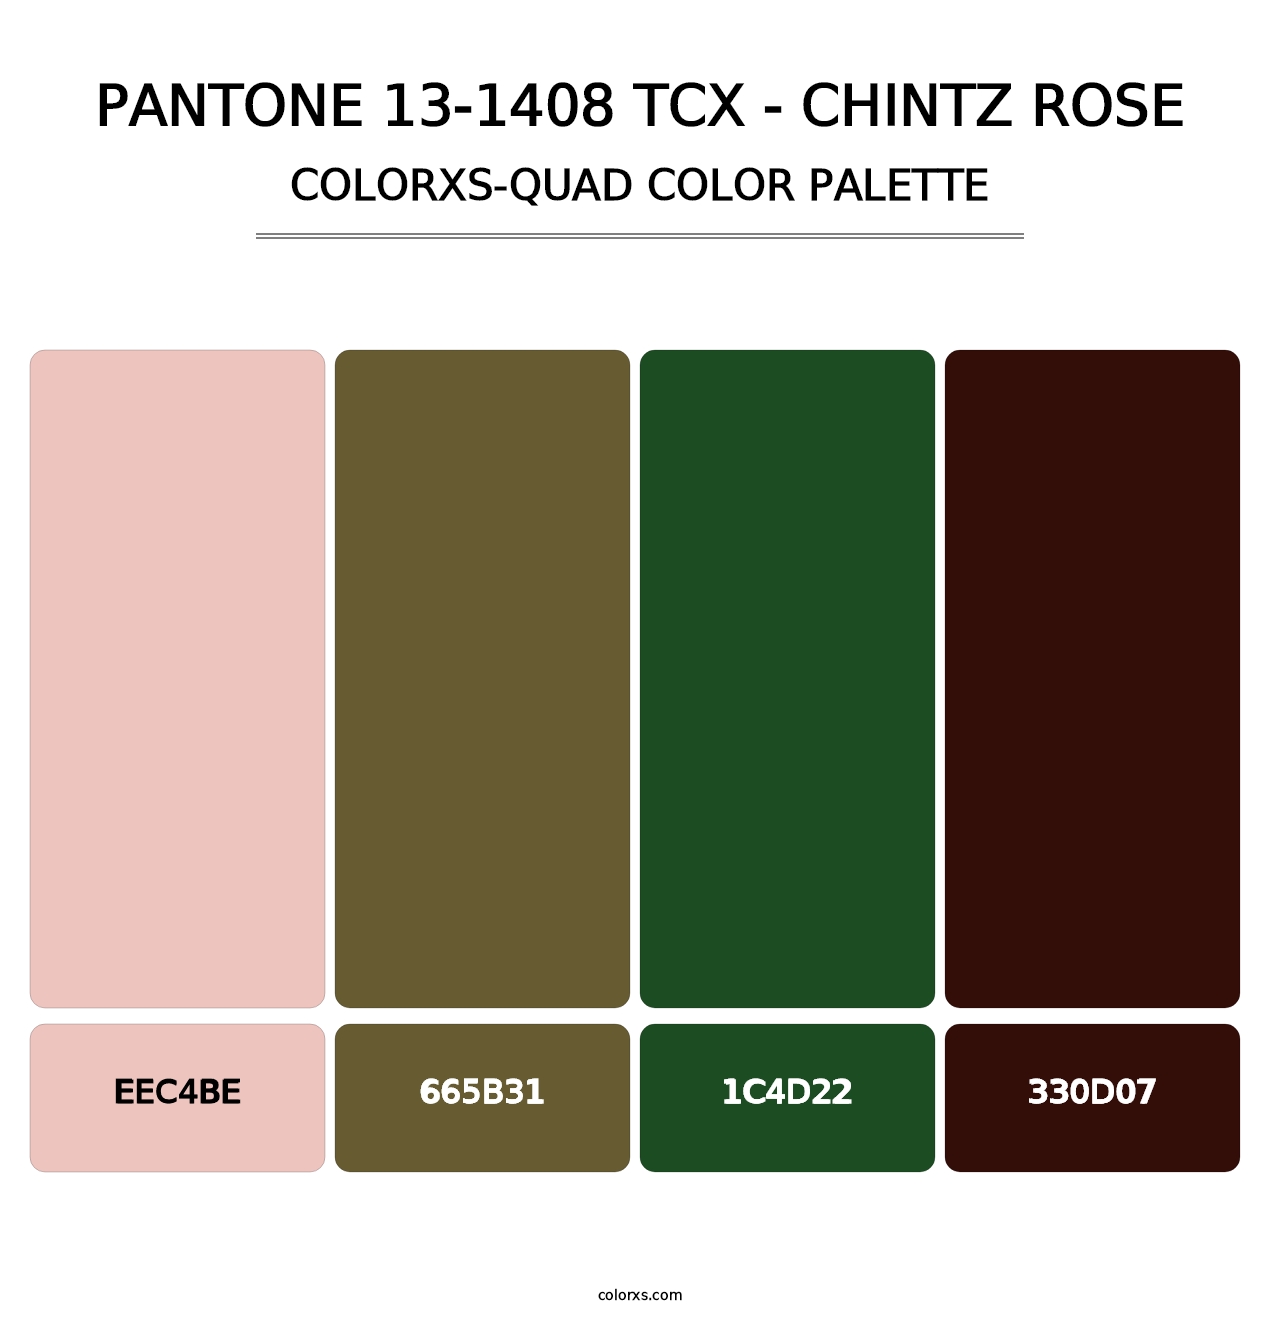 PANTONE 13-1408 TCX - Chintz Rose - Colorxs Quad Palette